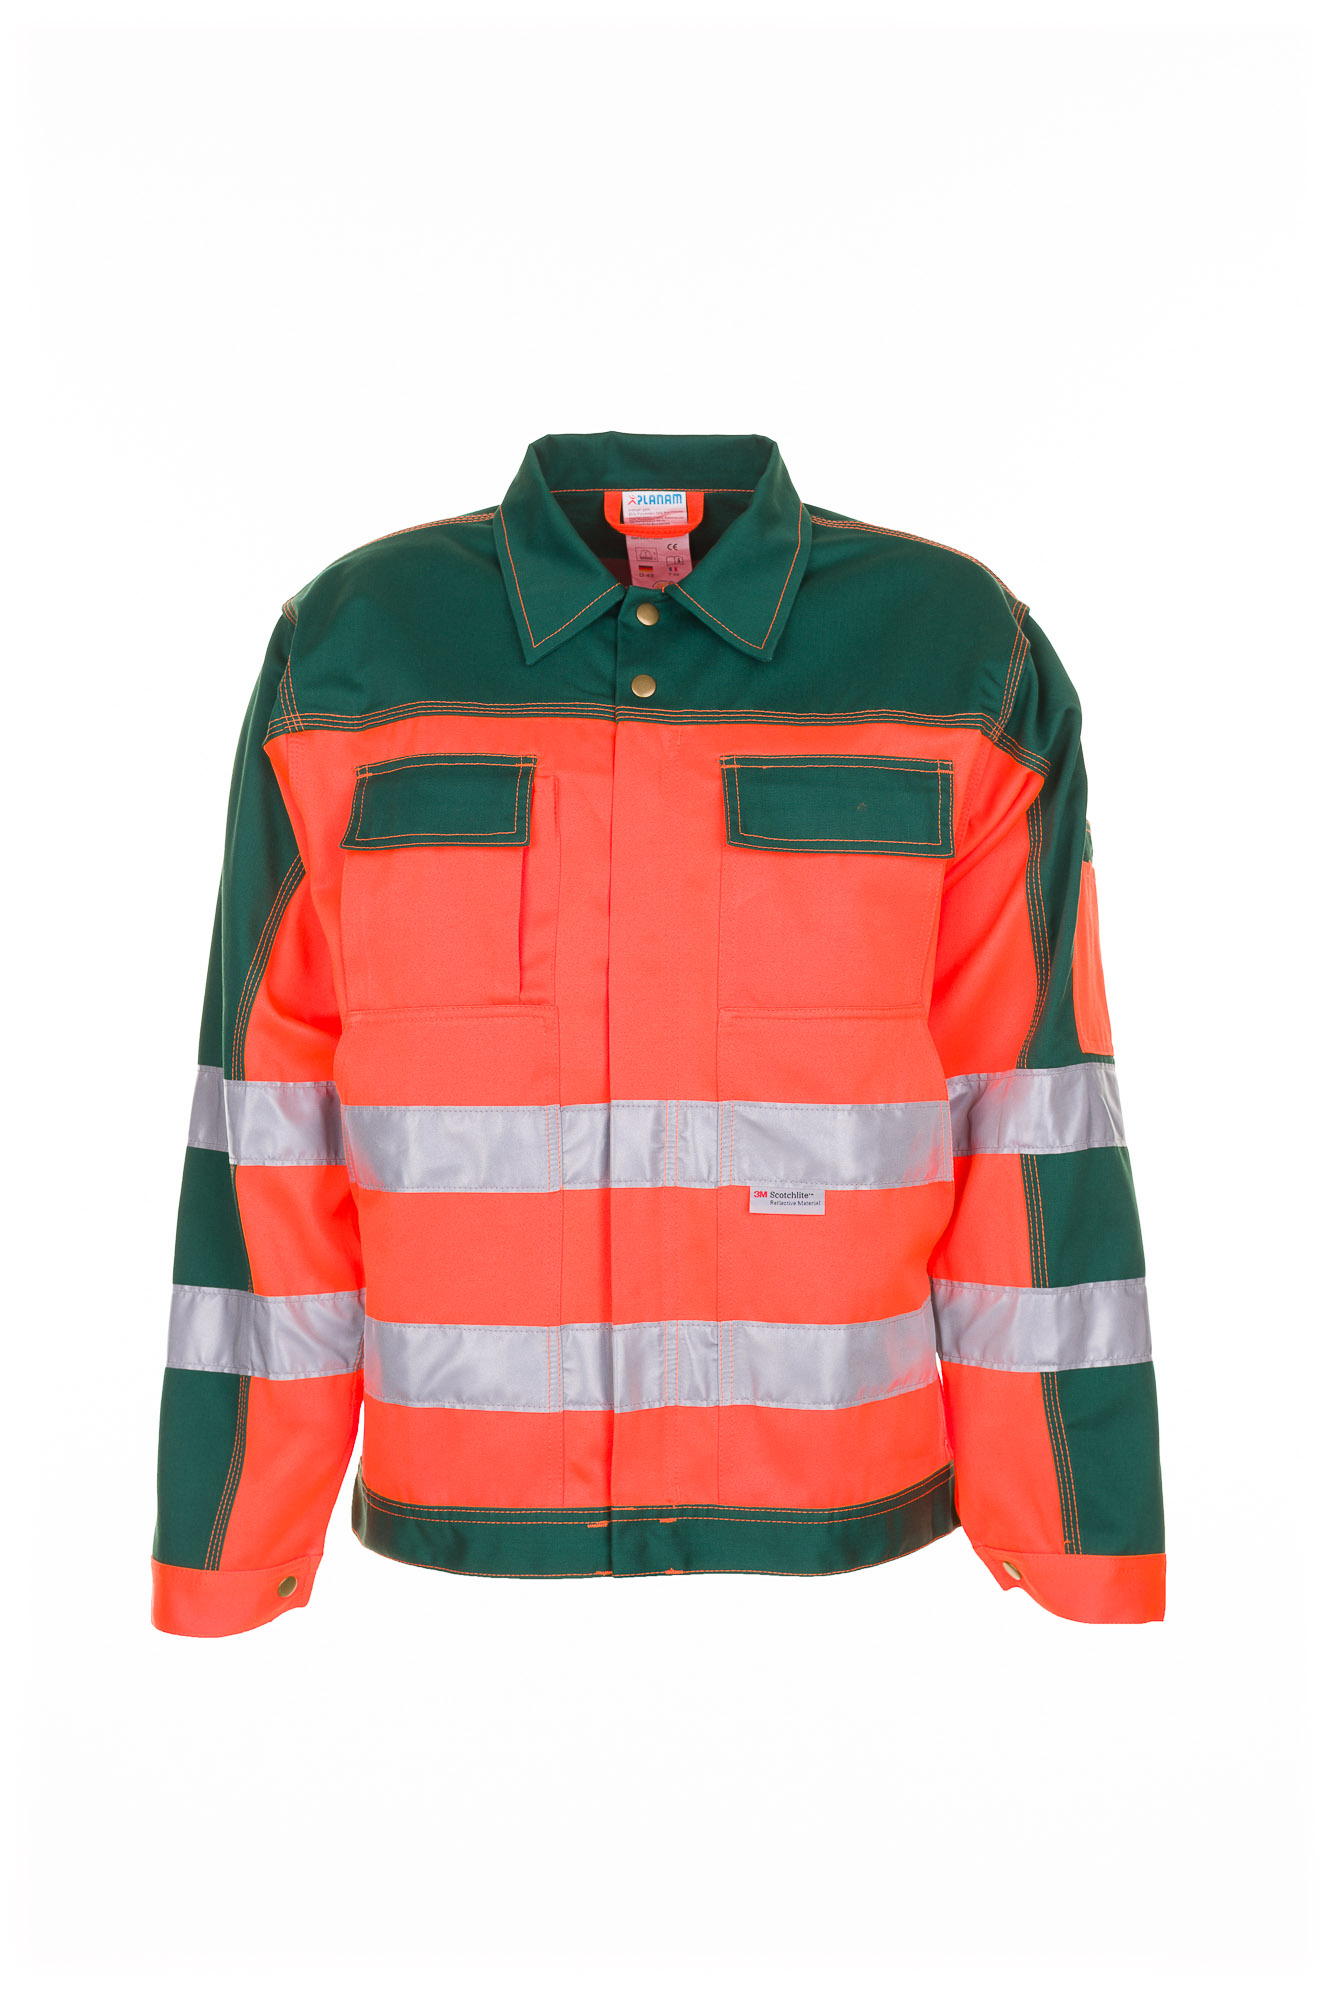 Planam Warnschutz Bundjacke Arbeitsjacke 2-farbig Größe 24 - 110, in 3 Farben